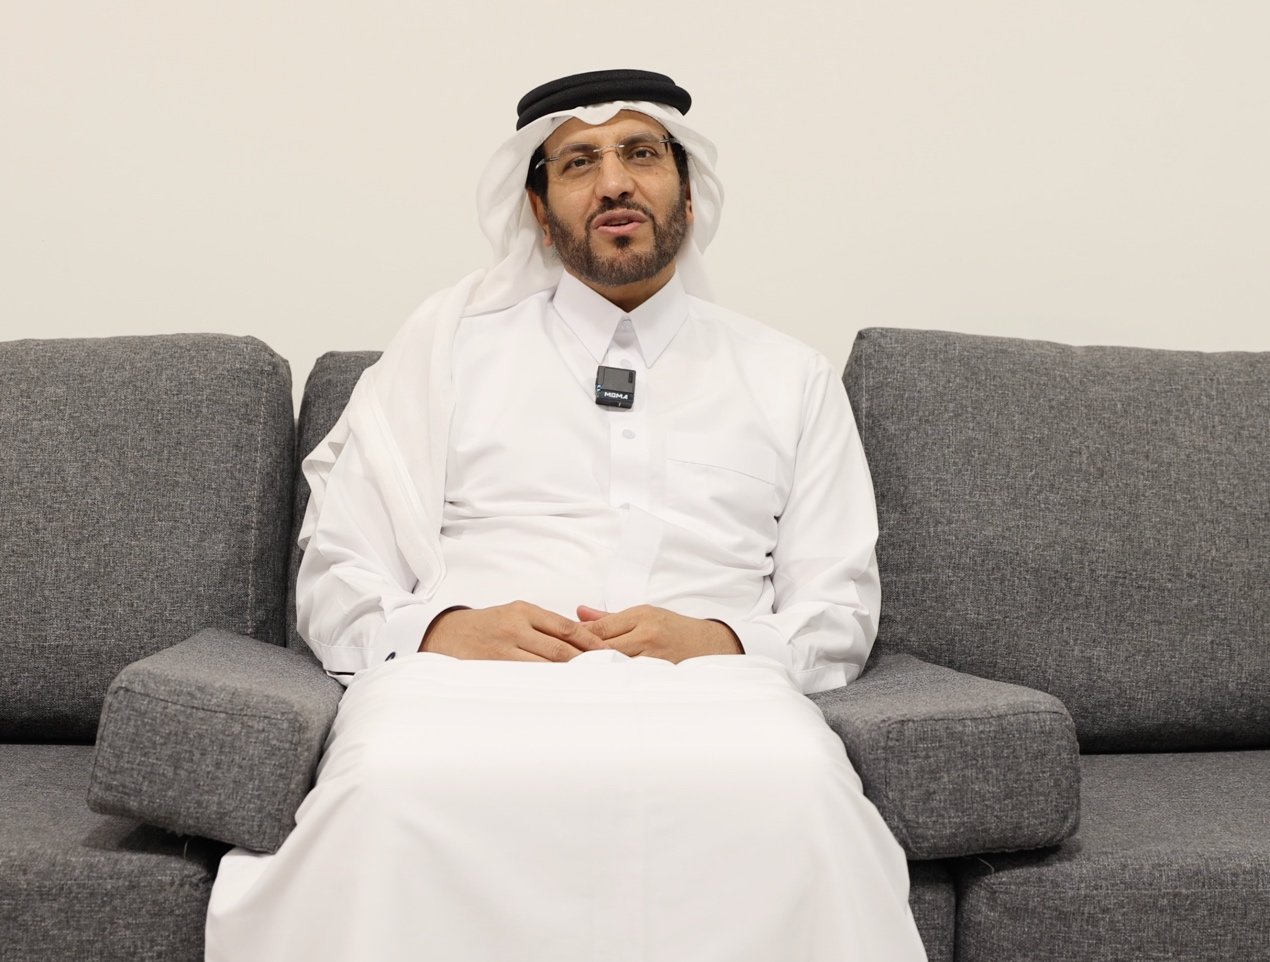 格力空调在卡塔尔的当地股东谢赫·费萨尔·贾西姆·阿勒萨尼。